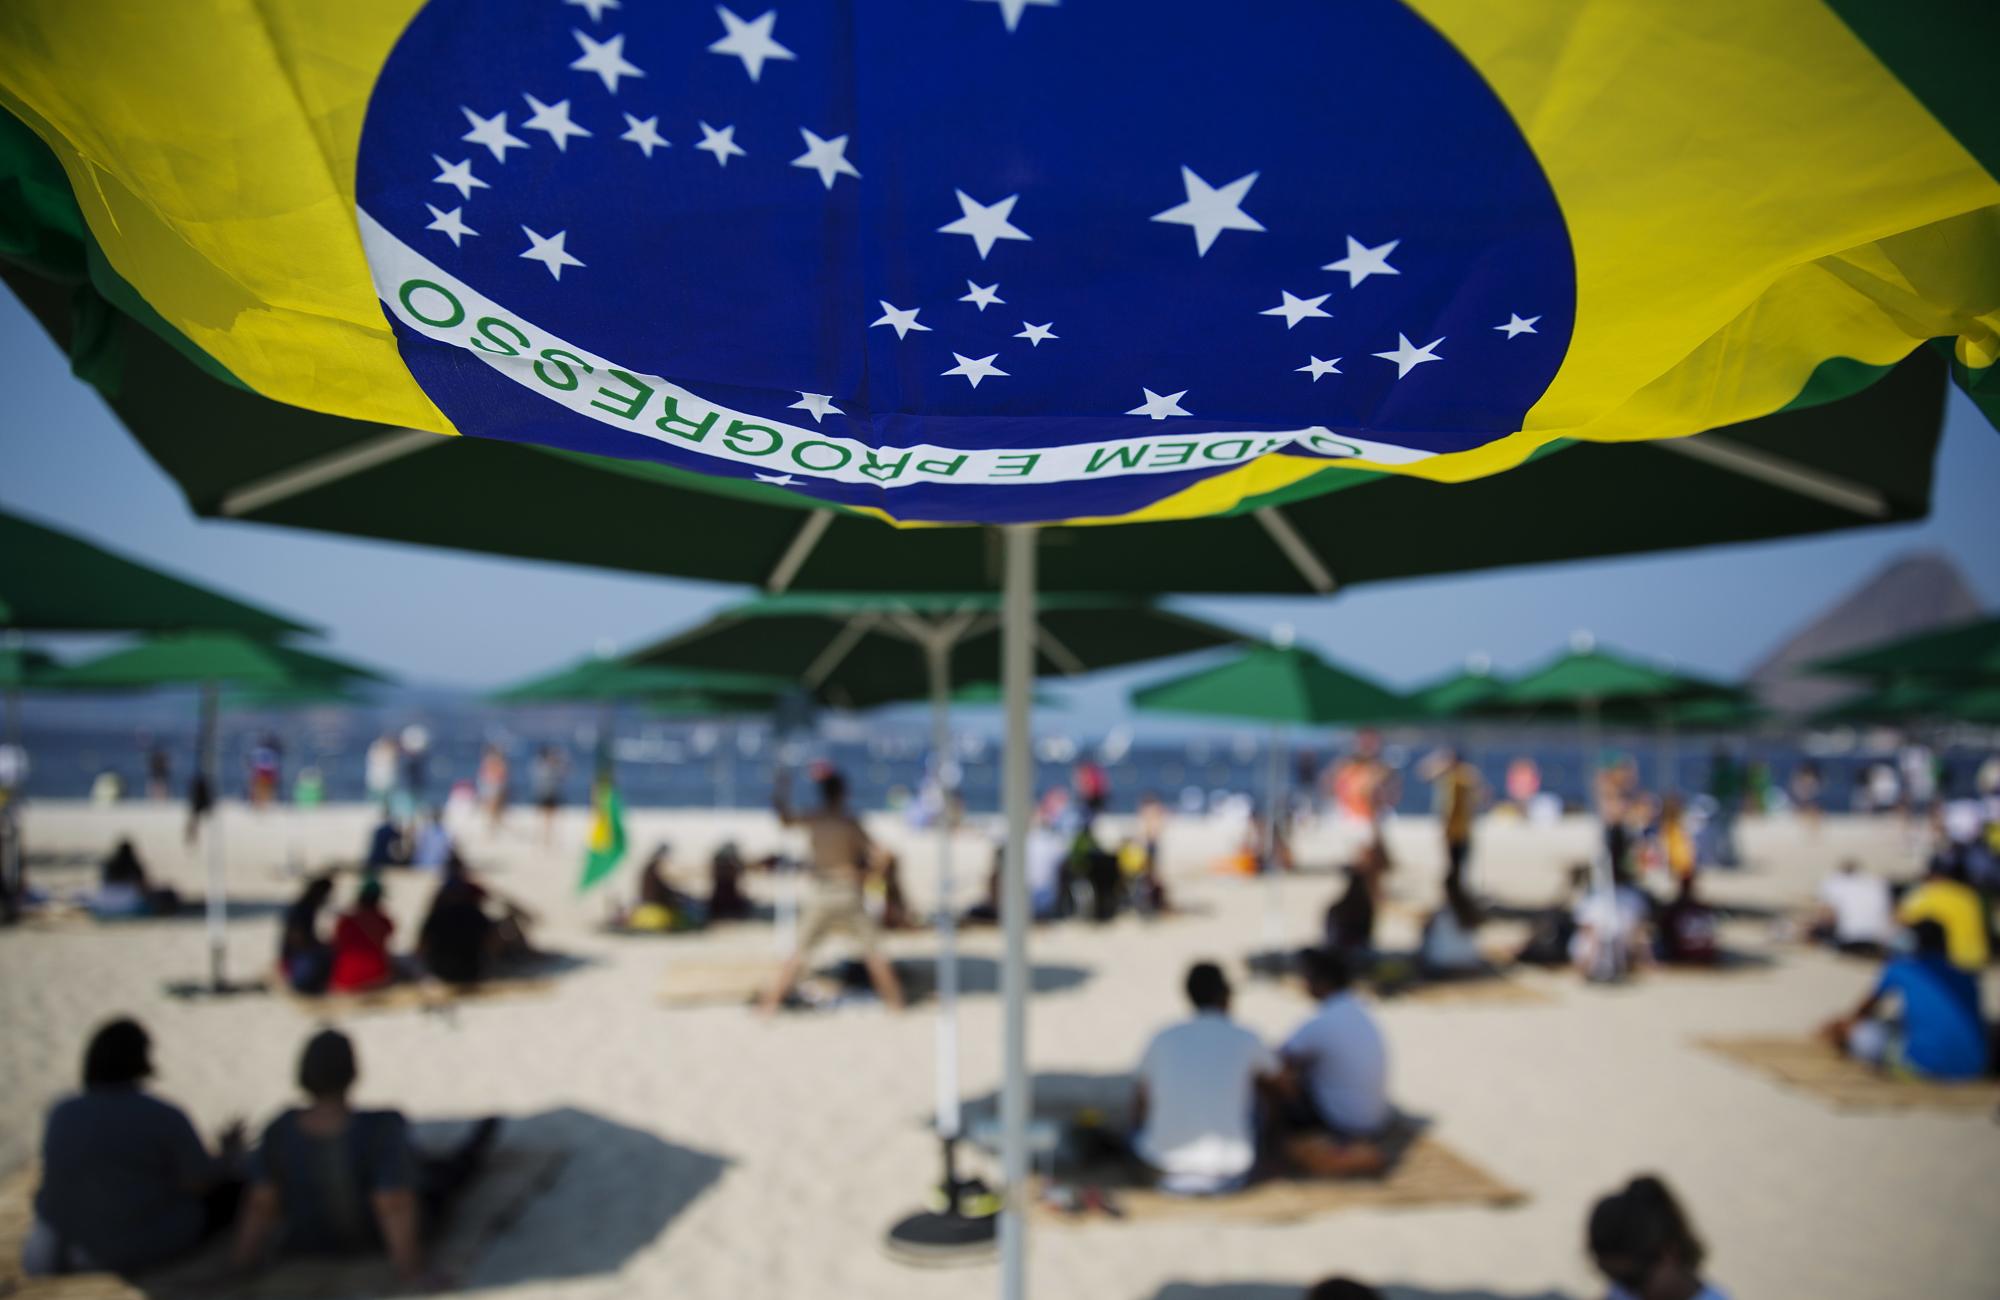 La bandera de Brasil ondea bajo una sombrilla mientras los espectadores observan desde una playa durante las competiciones de vela.